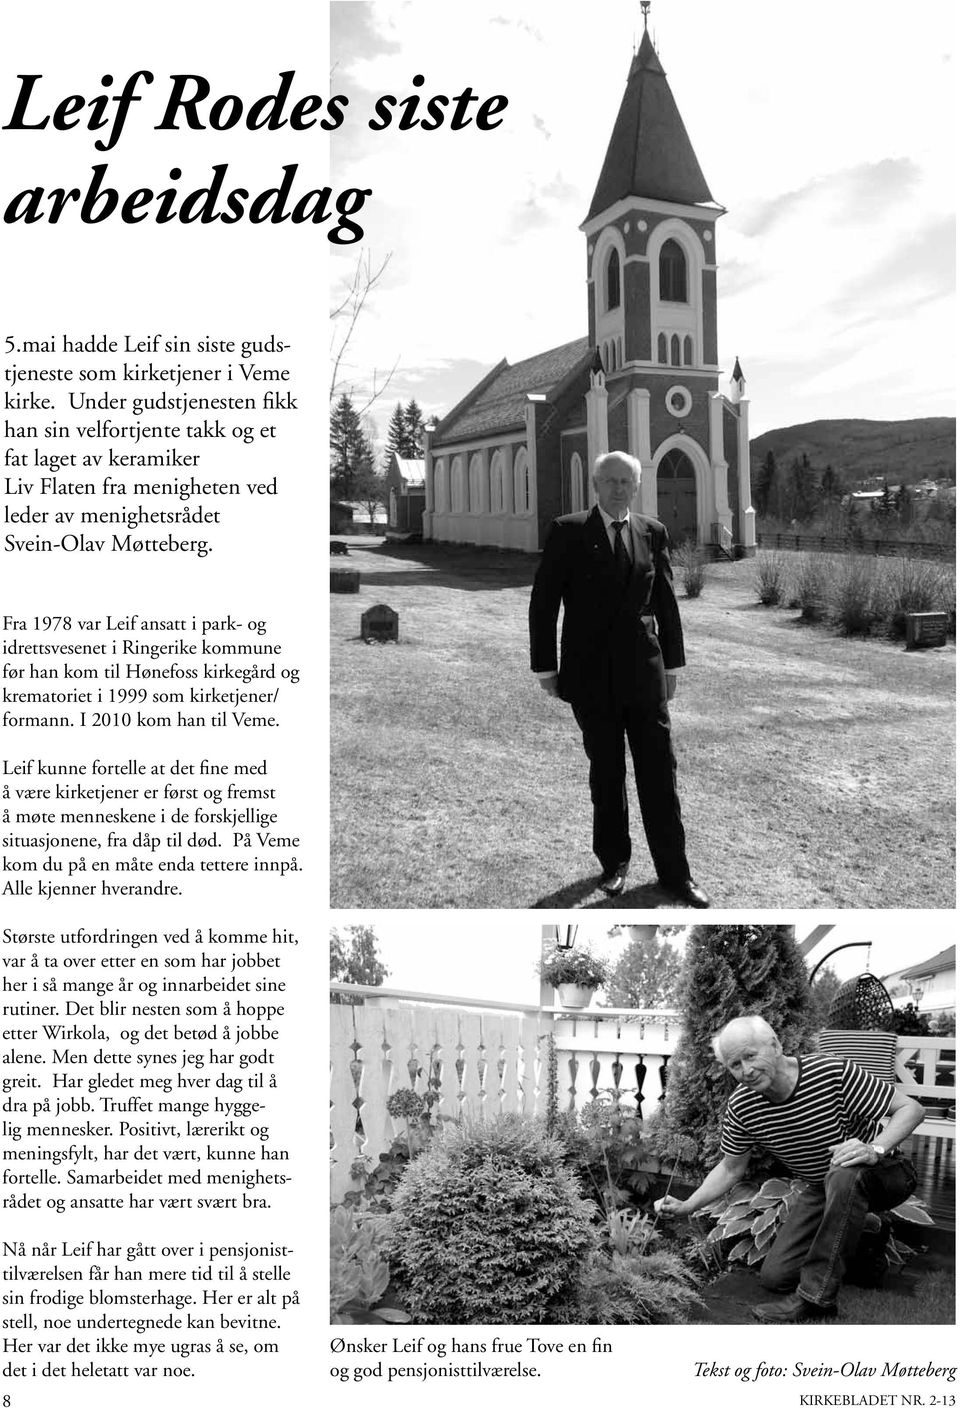 Fra 1978 var Leif ansatt i park- og idrettsvesenet i Ringerike kommune før han kom til Hønefoss kirkegård og krematoriet i 1999 som kirketjener/ formann. I 2010 kom han til Veme.